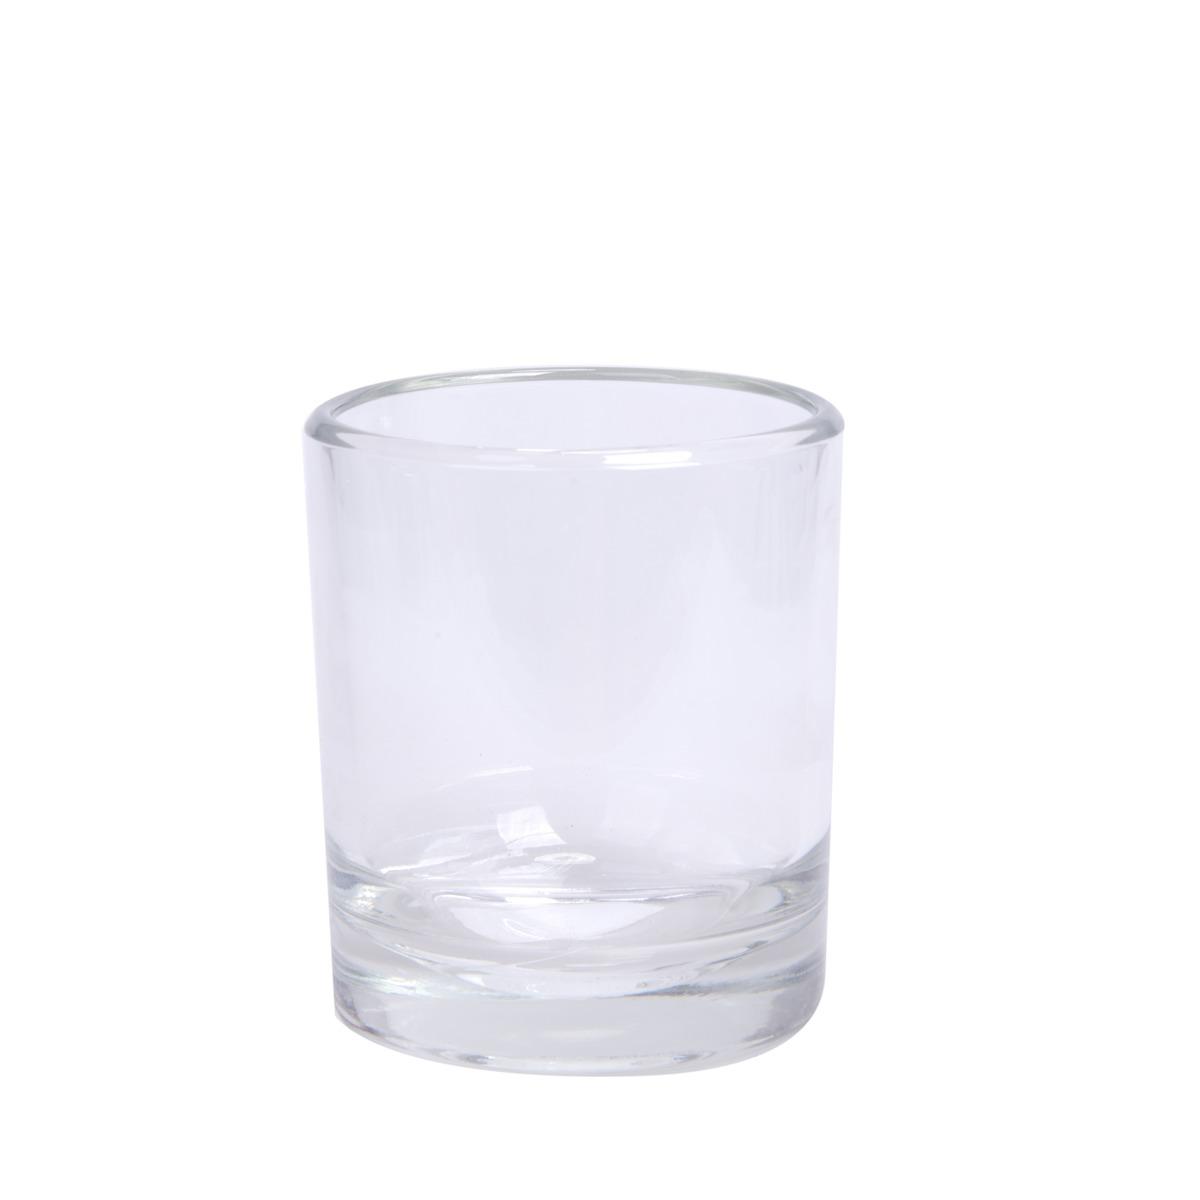 Photophore en verre - Diamètre 10 cm - Hauteur 12 cm - transparent